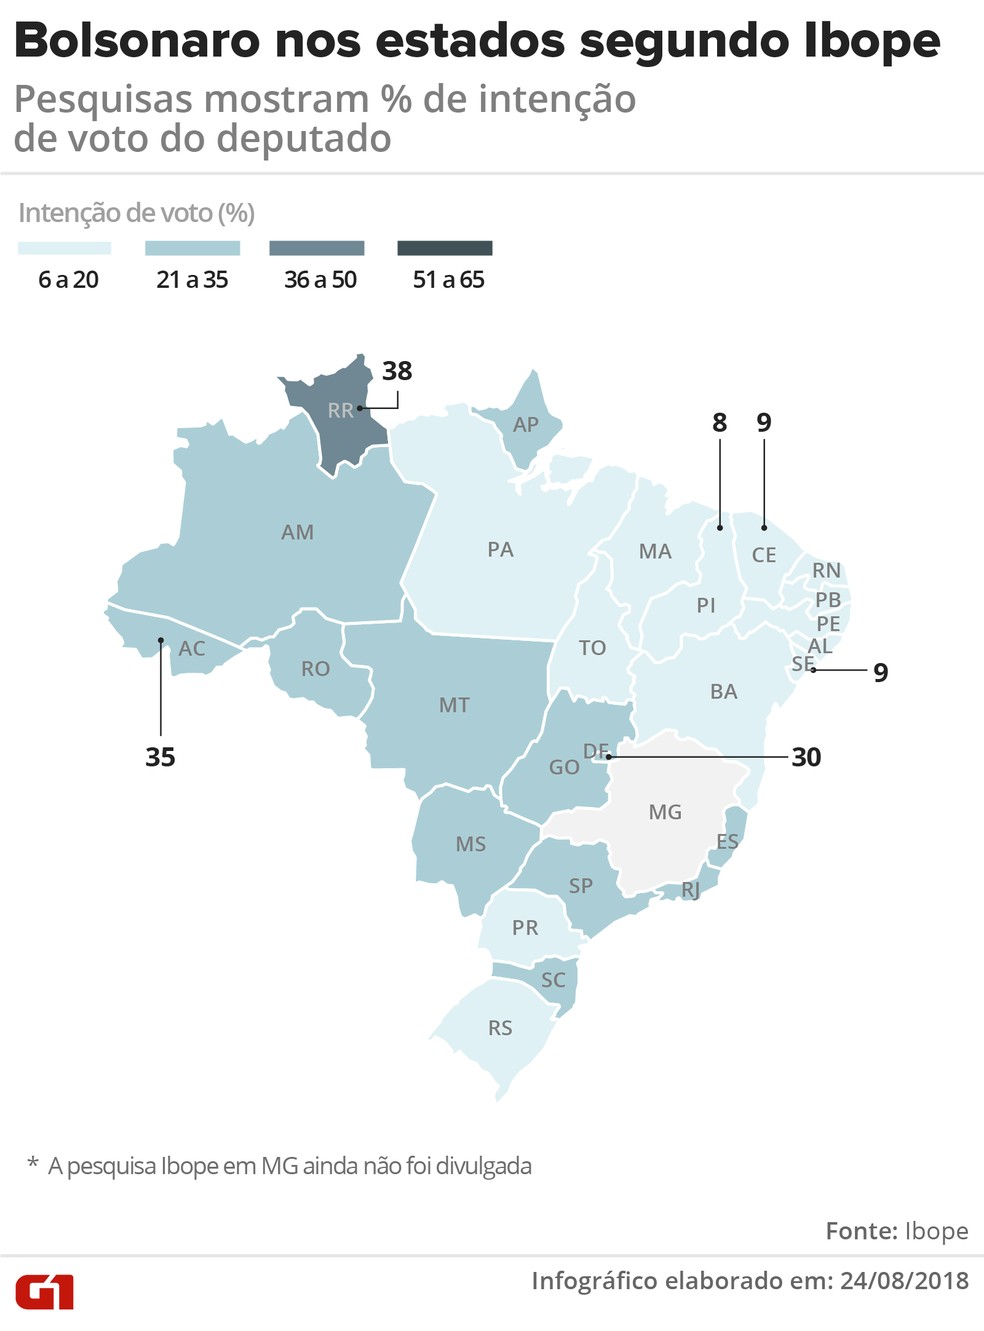 Pesquisas mostram % de intenção de voto em Bolsonaro (Foto: Igor Estrella/G1)